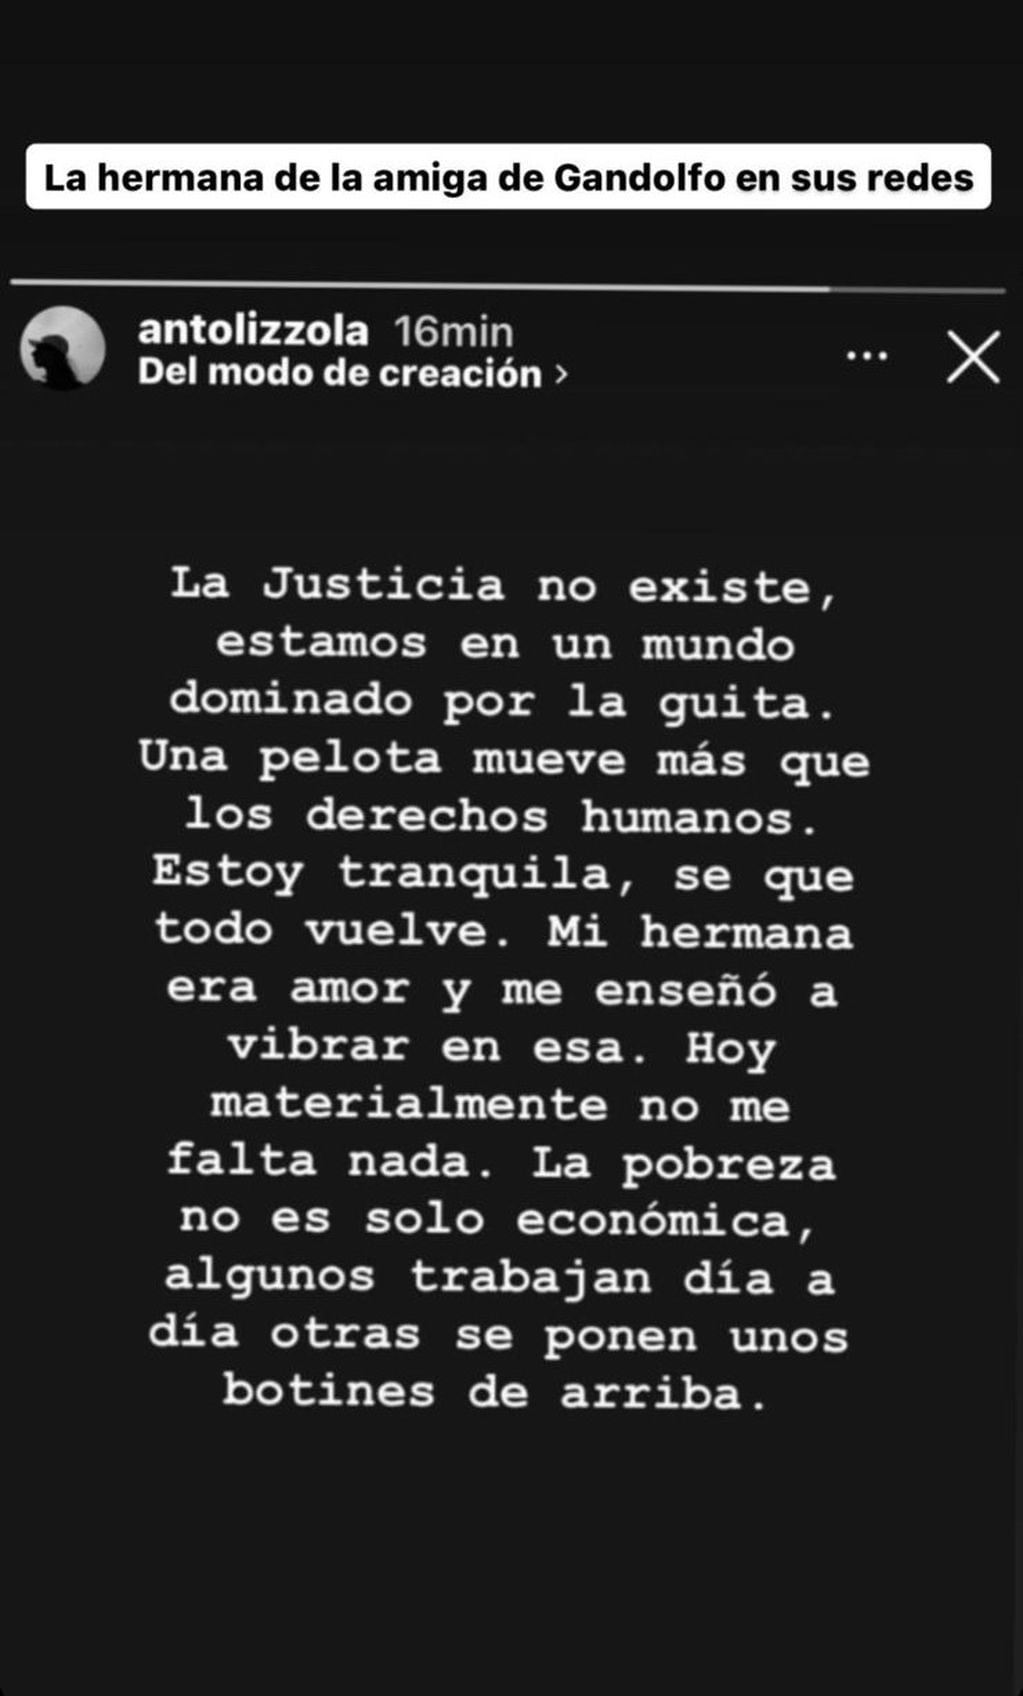 Mensajes en contra de Agustina Gandolfo y Lautaro Martínez por sus dichos sobre lo ocurrido con la niñera.